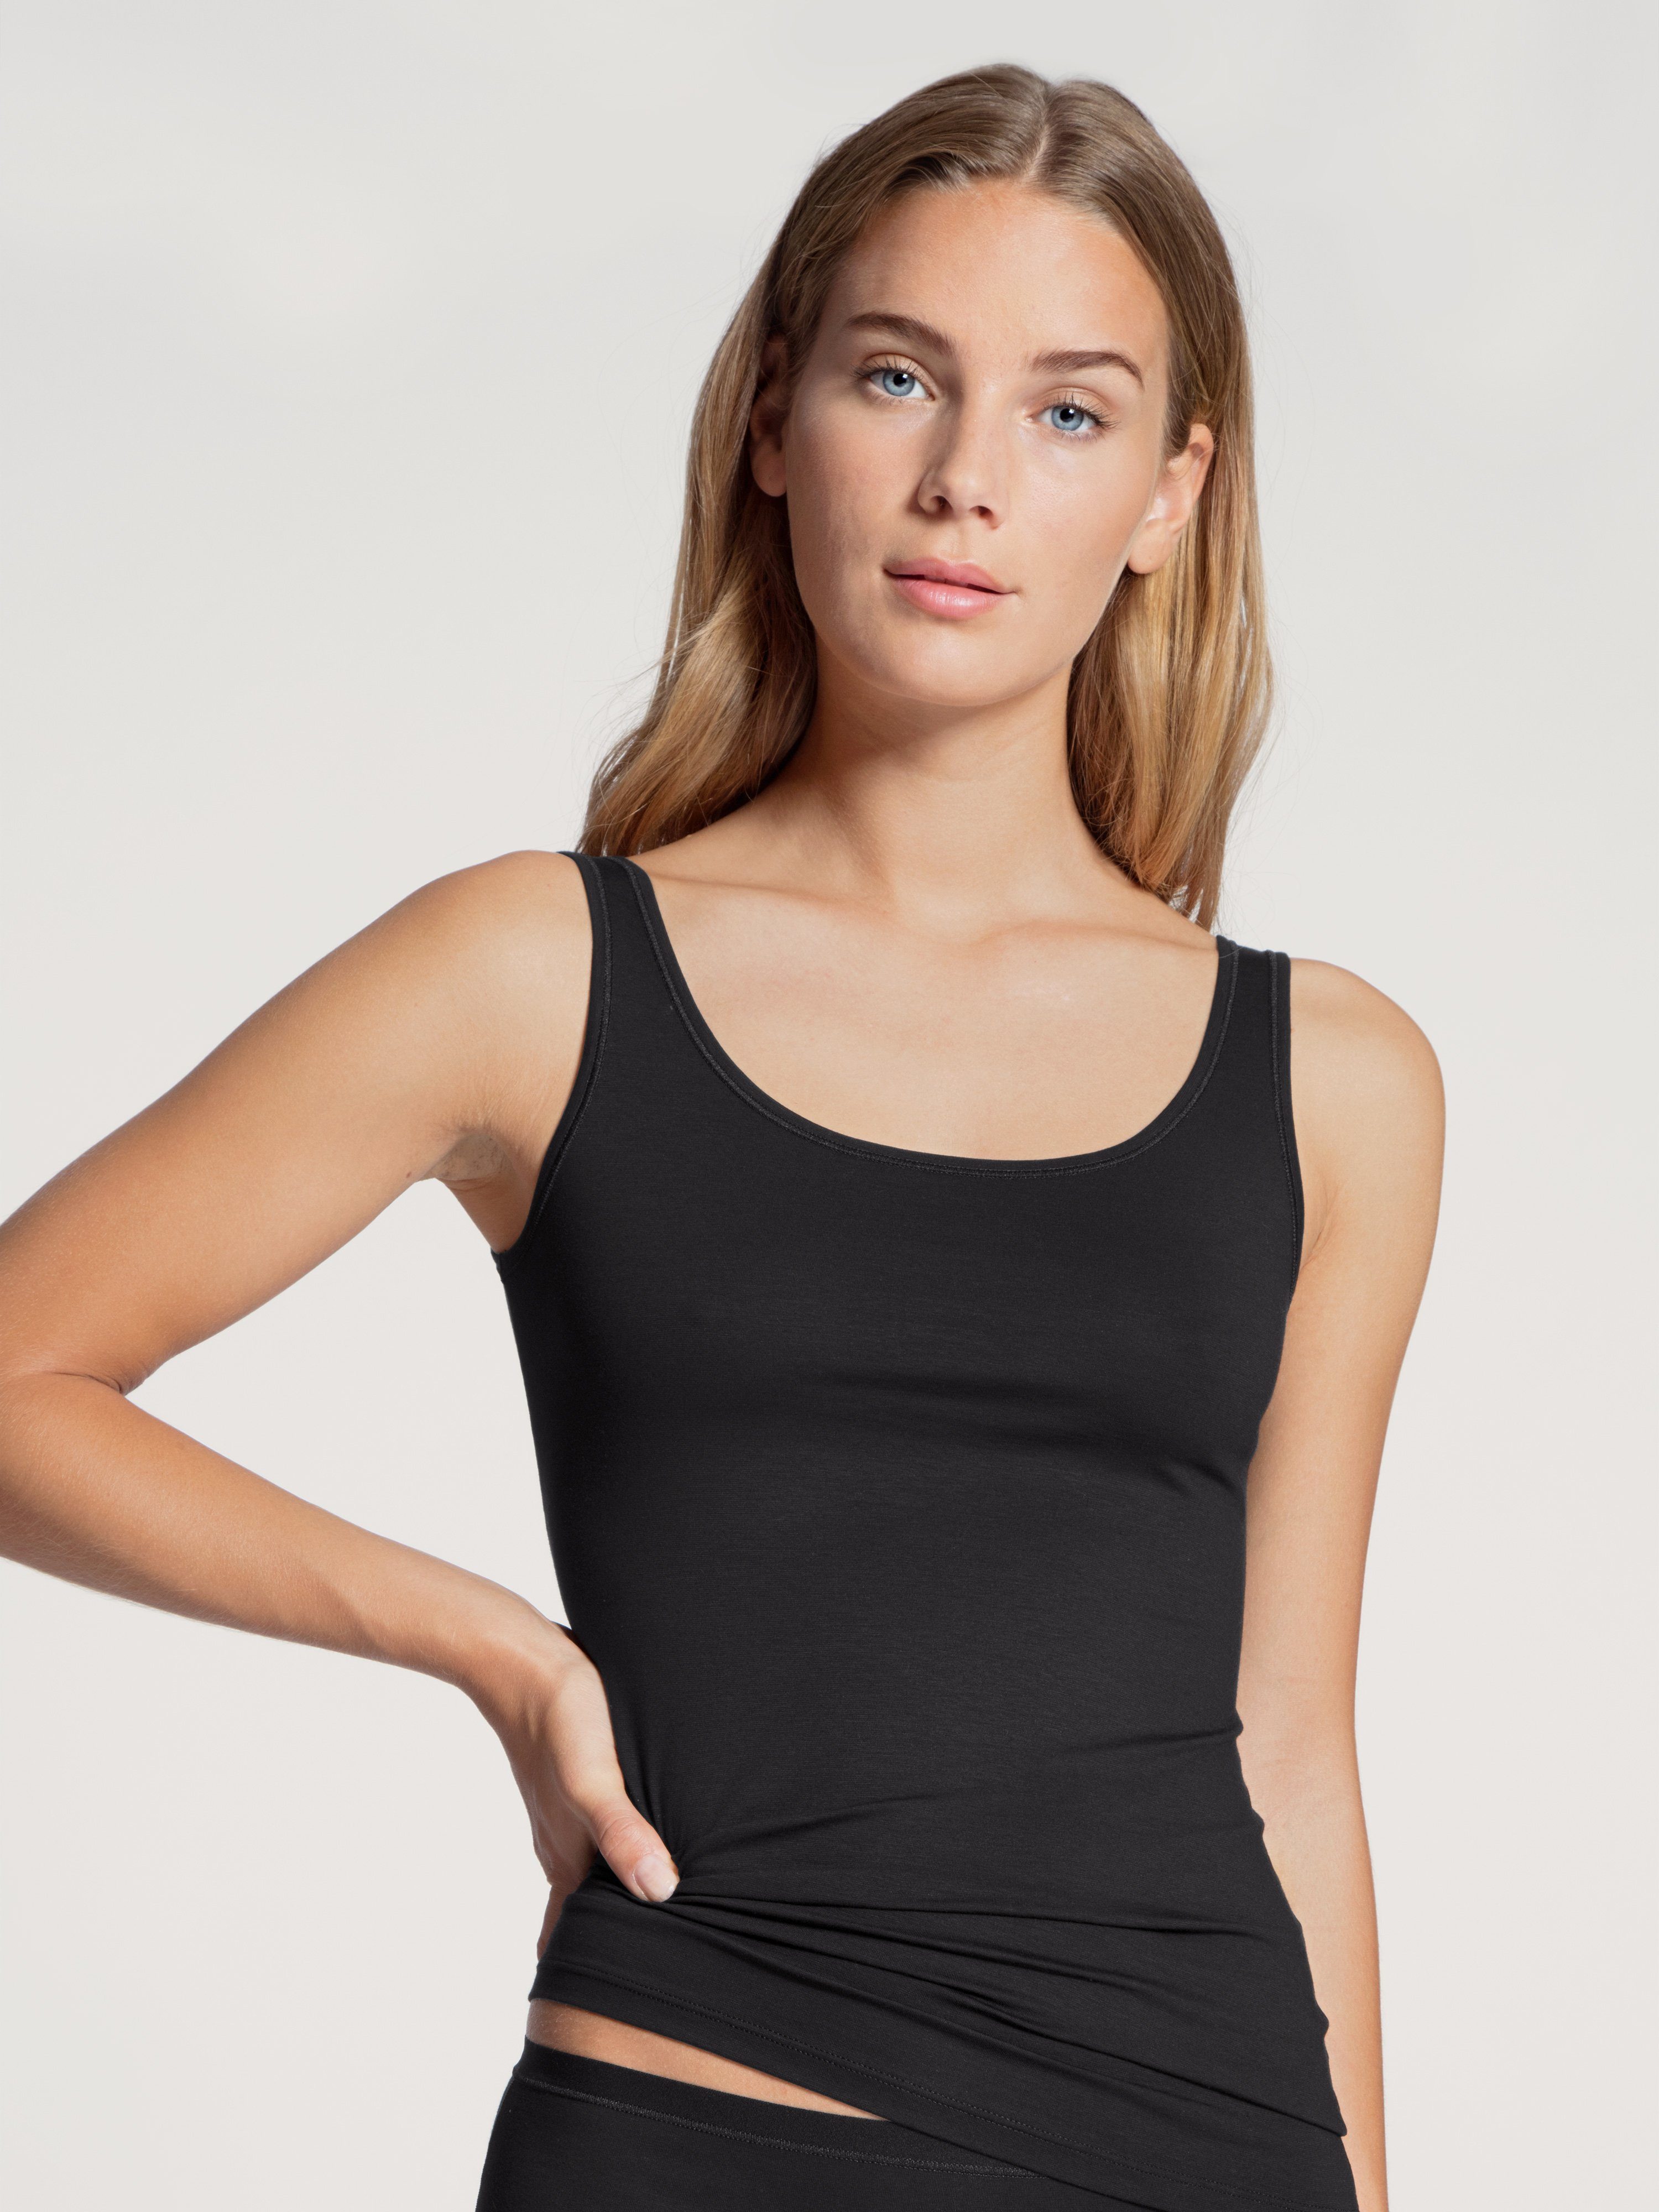 CALIDA Unterhemd Natural Comfort Top mit reduzierter Pillingbildung schwarz | Ärmellose Unterhemden